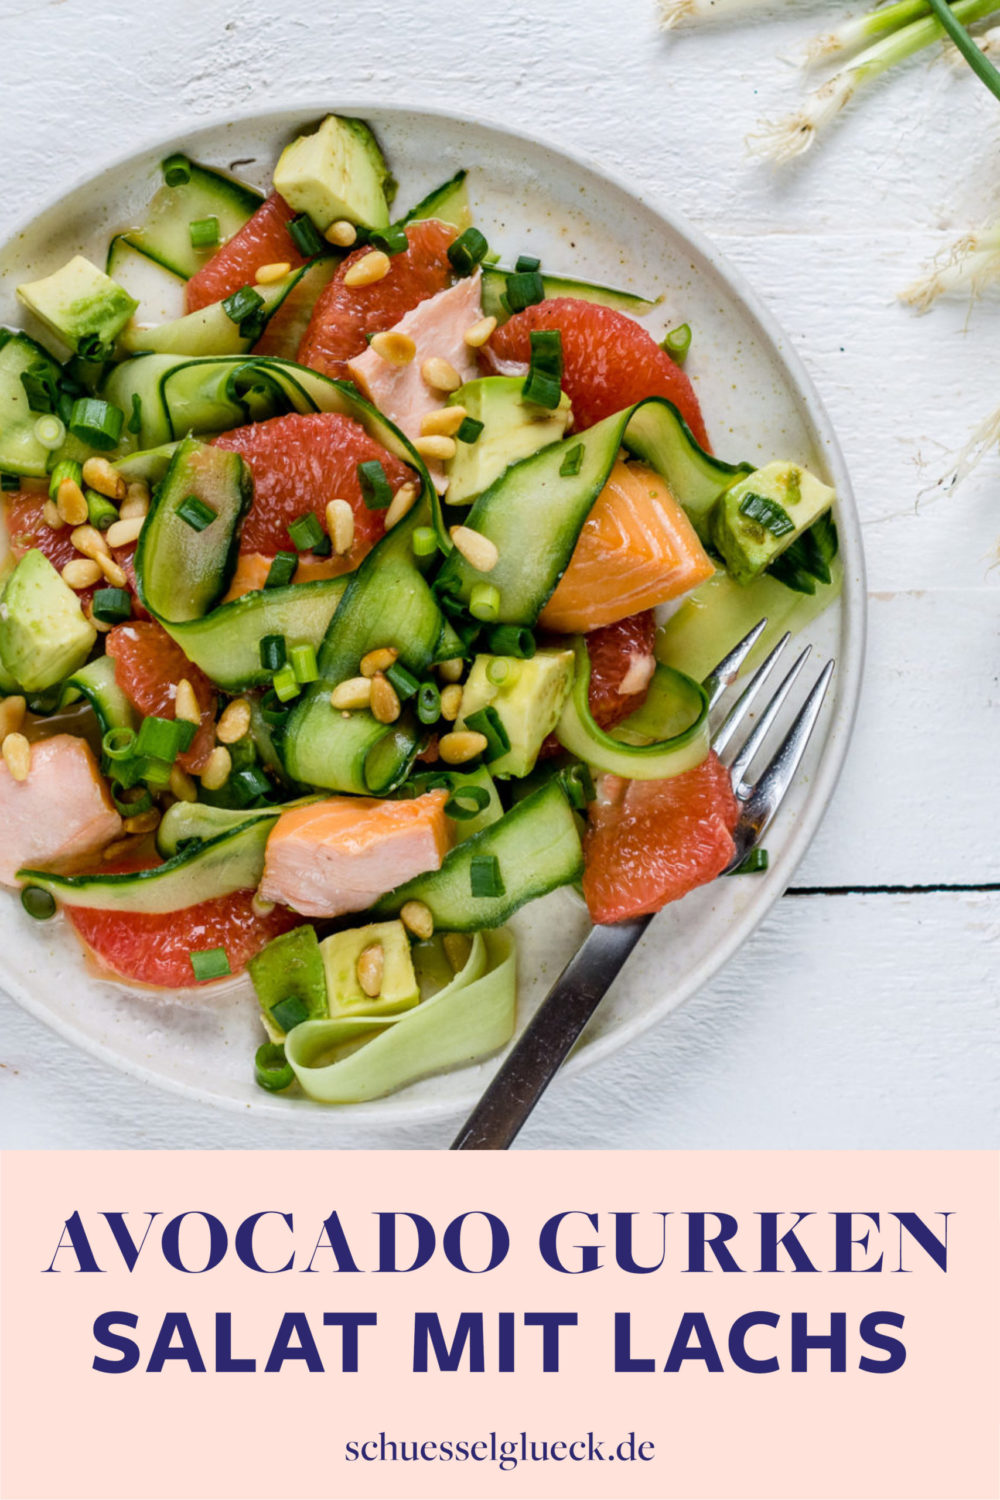 Erfrischender Avocado-Gurkensalat mit Stremellachs und Grapefruit